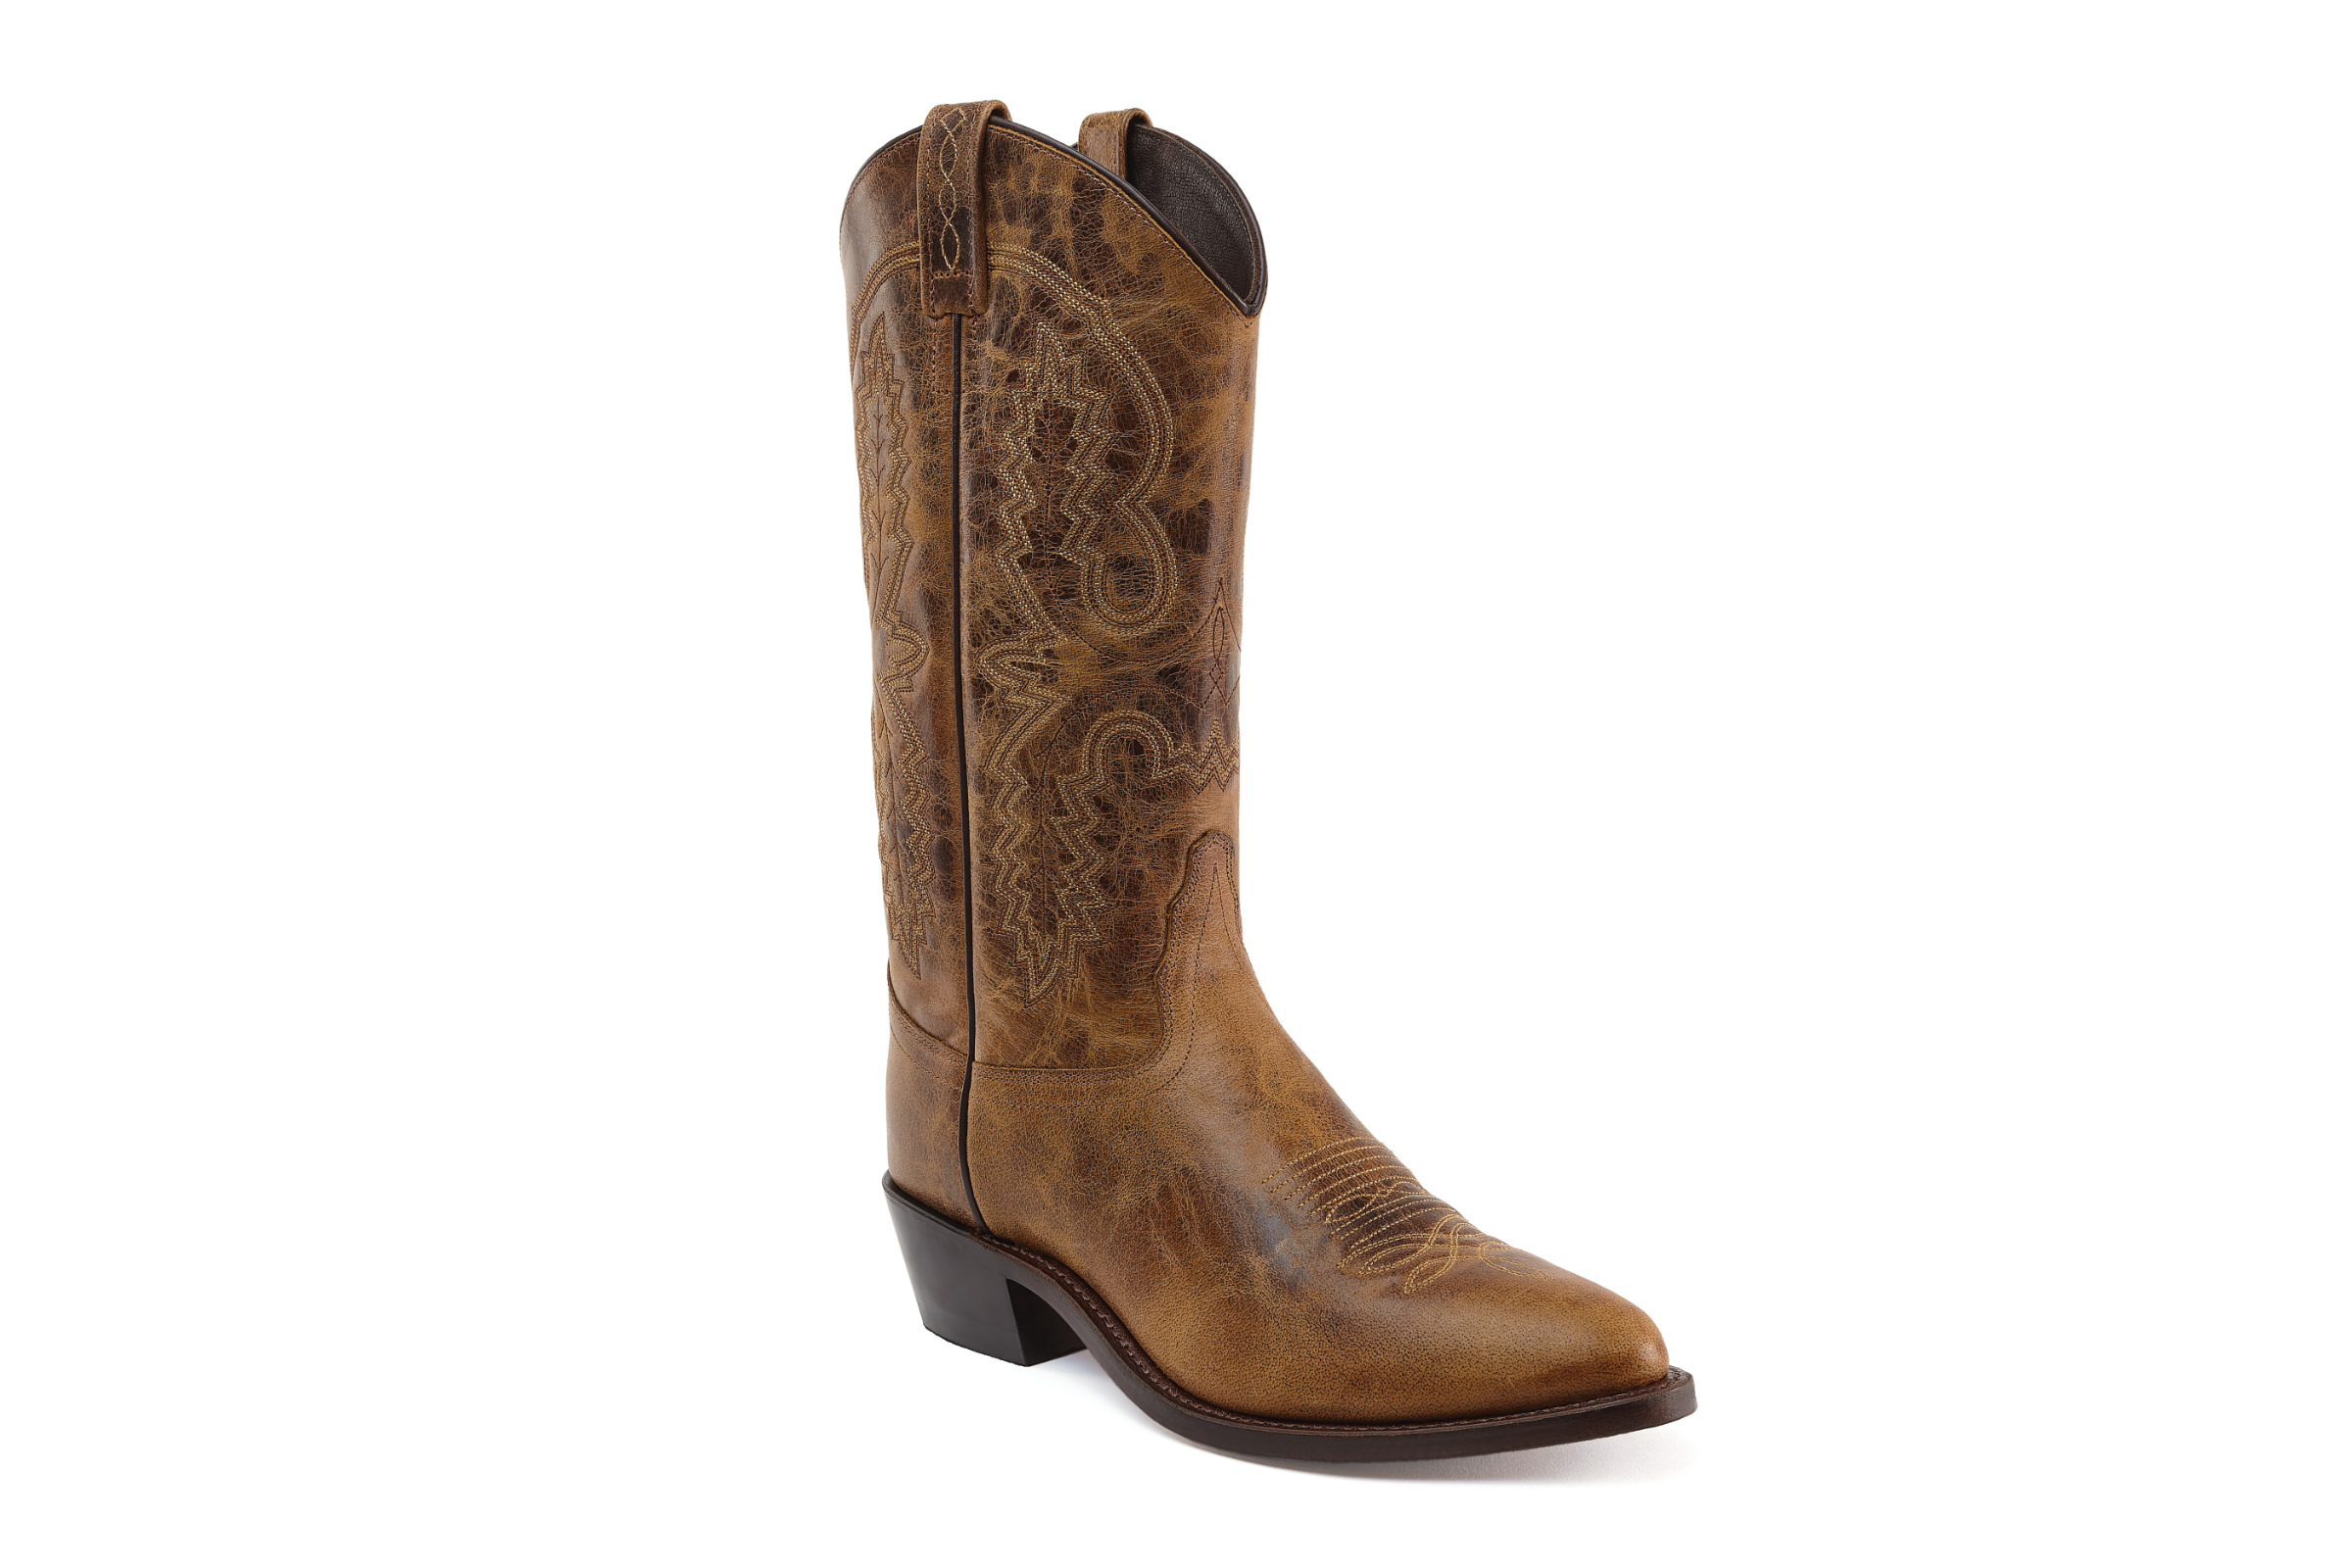 Men's cowboy boots OW2042 Placerville, brown